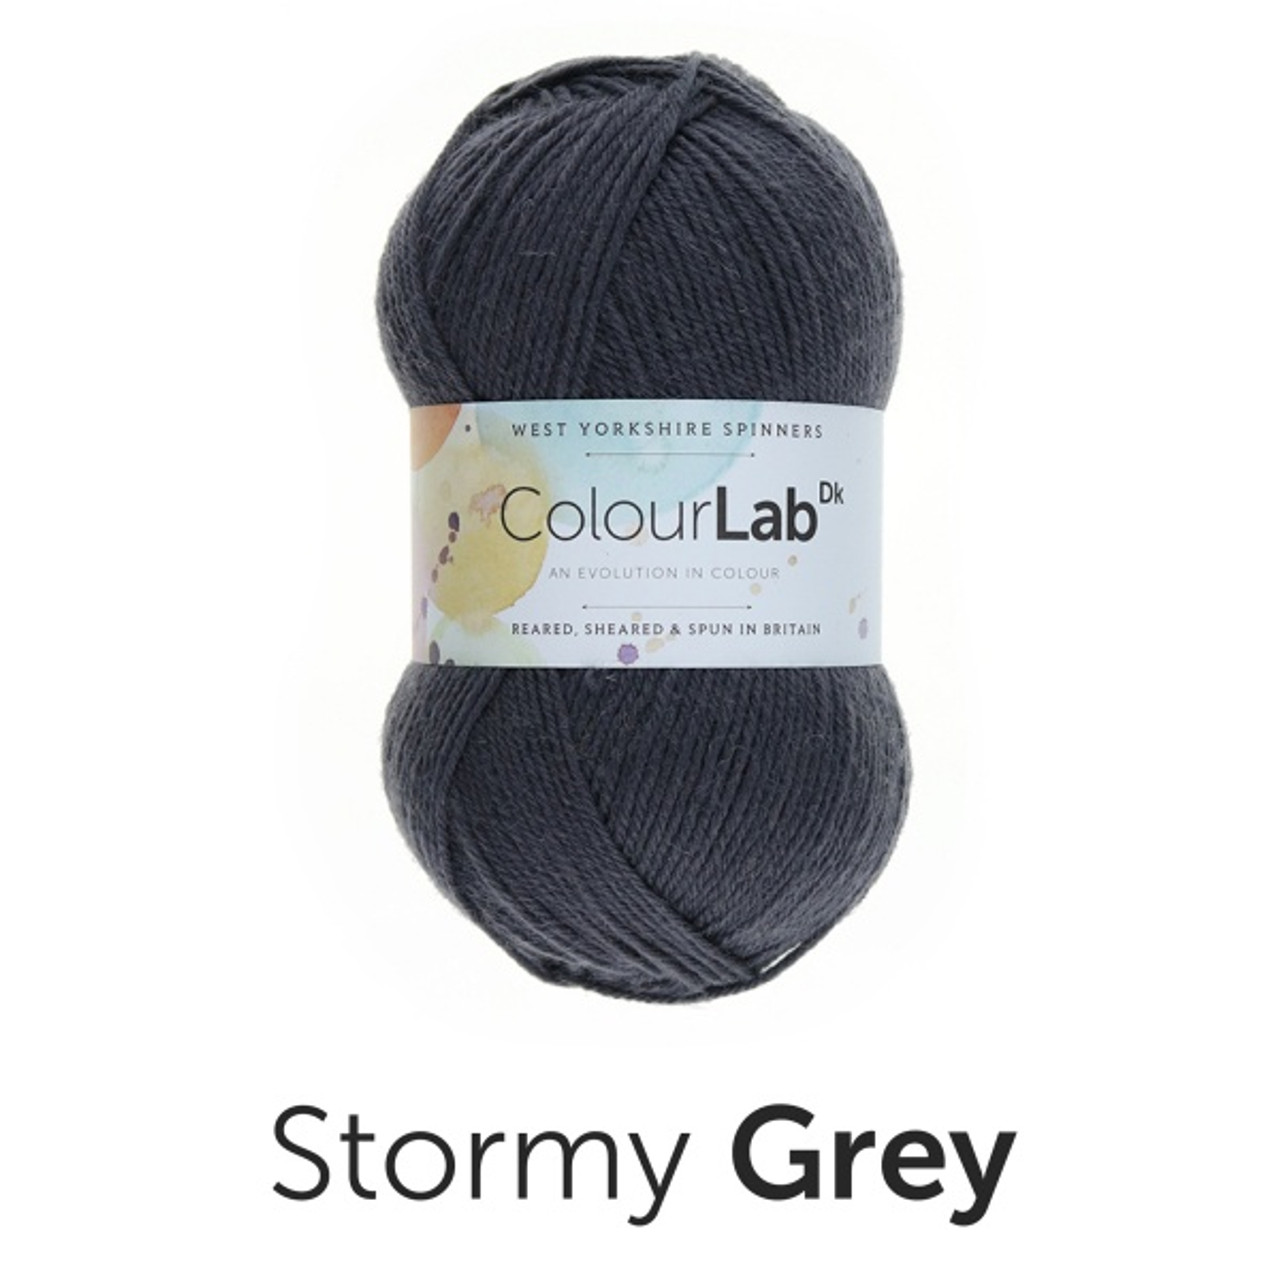 Stormy Grey 100% British Wool ColourLab DK (100g)